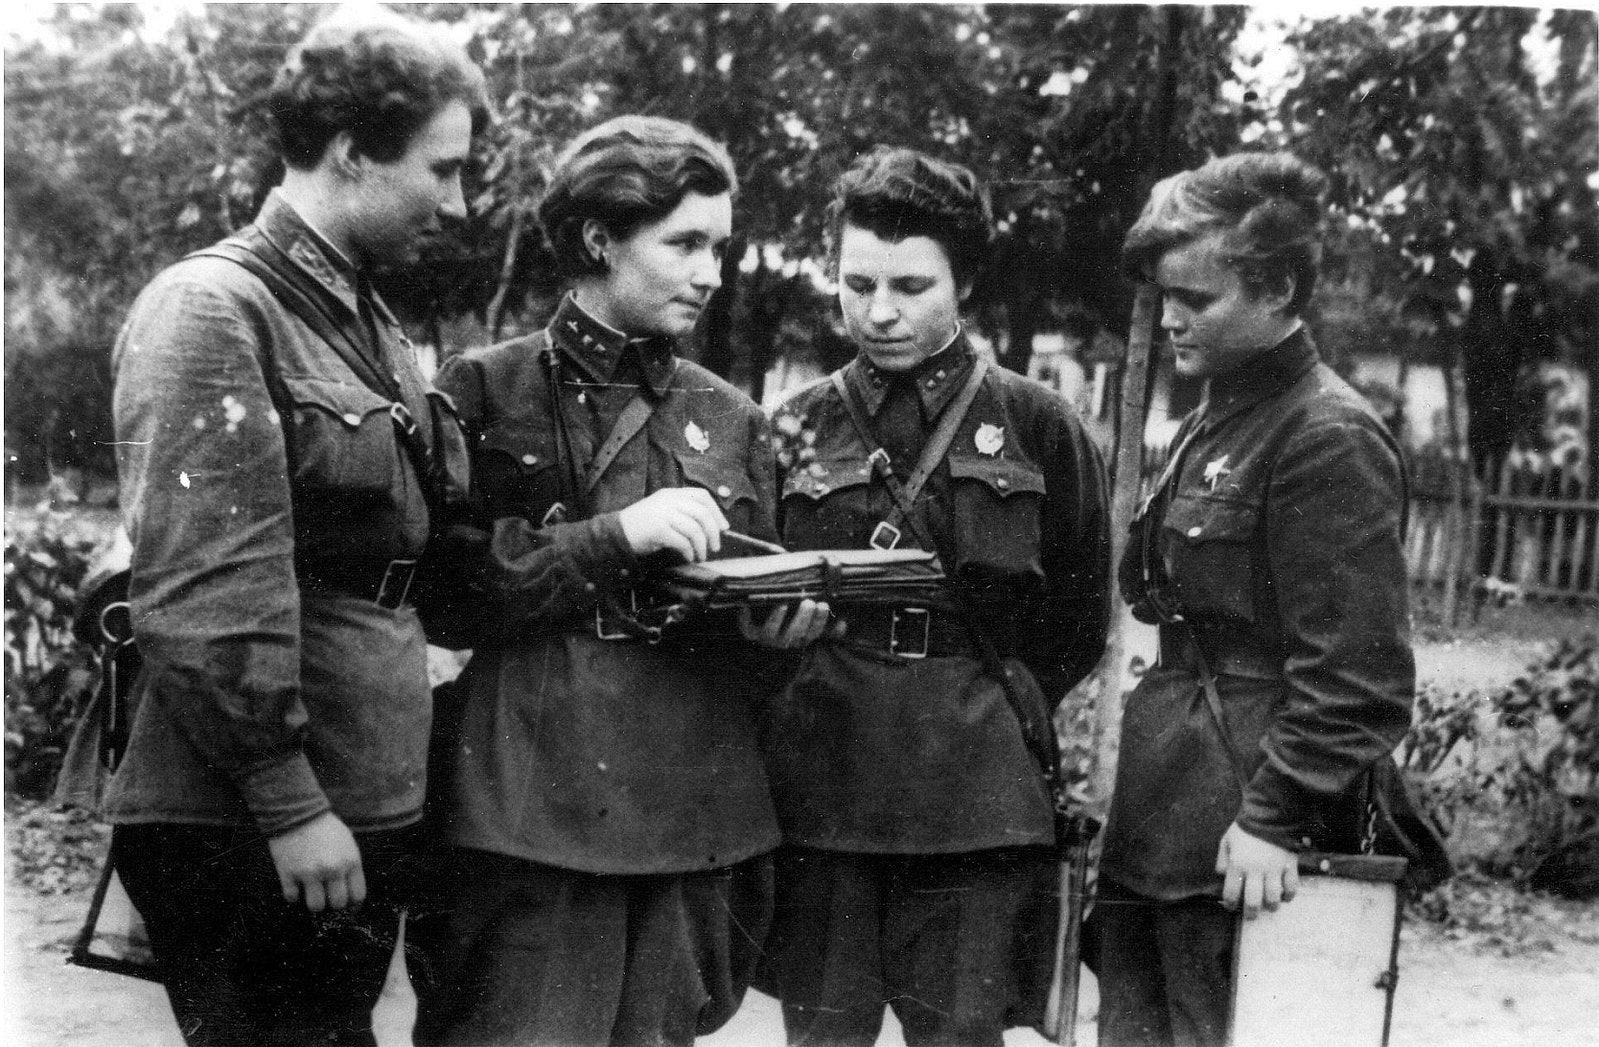 二战制服的苏联女兵 库存图片. 图片 包括有 减速火箭, 弹药, 其次, 表面, 重立法, 帽子, 背包 - 35958561